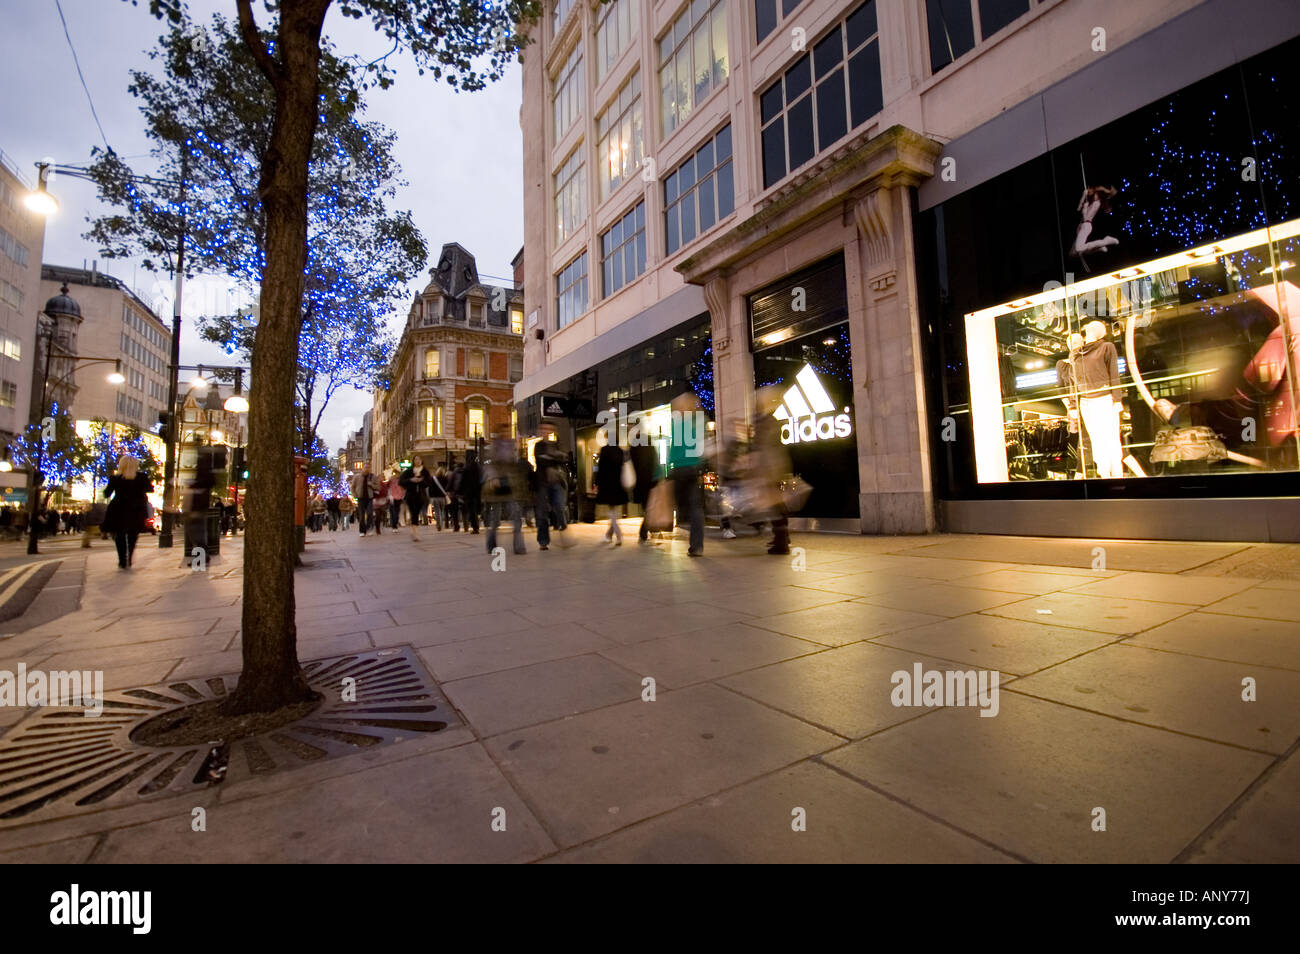 Recuerdo pierna Hectáreas Tienda adidas en Oxford street, decoración de Navidad luz de noche en  Londres Fotografía de stock - Alamy